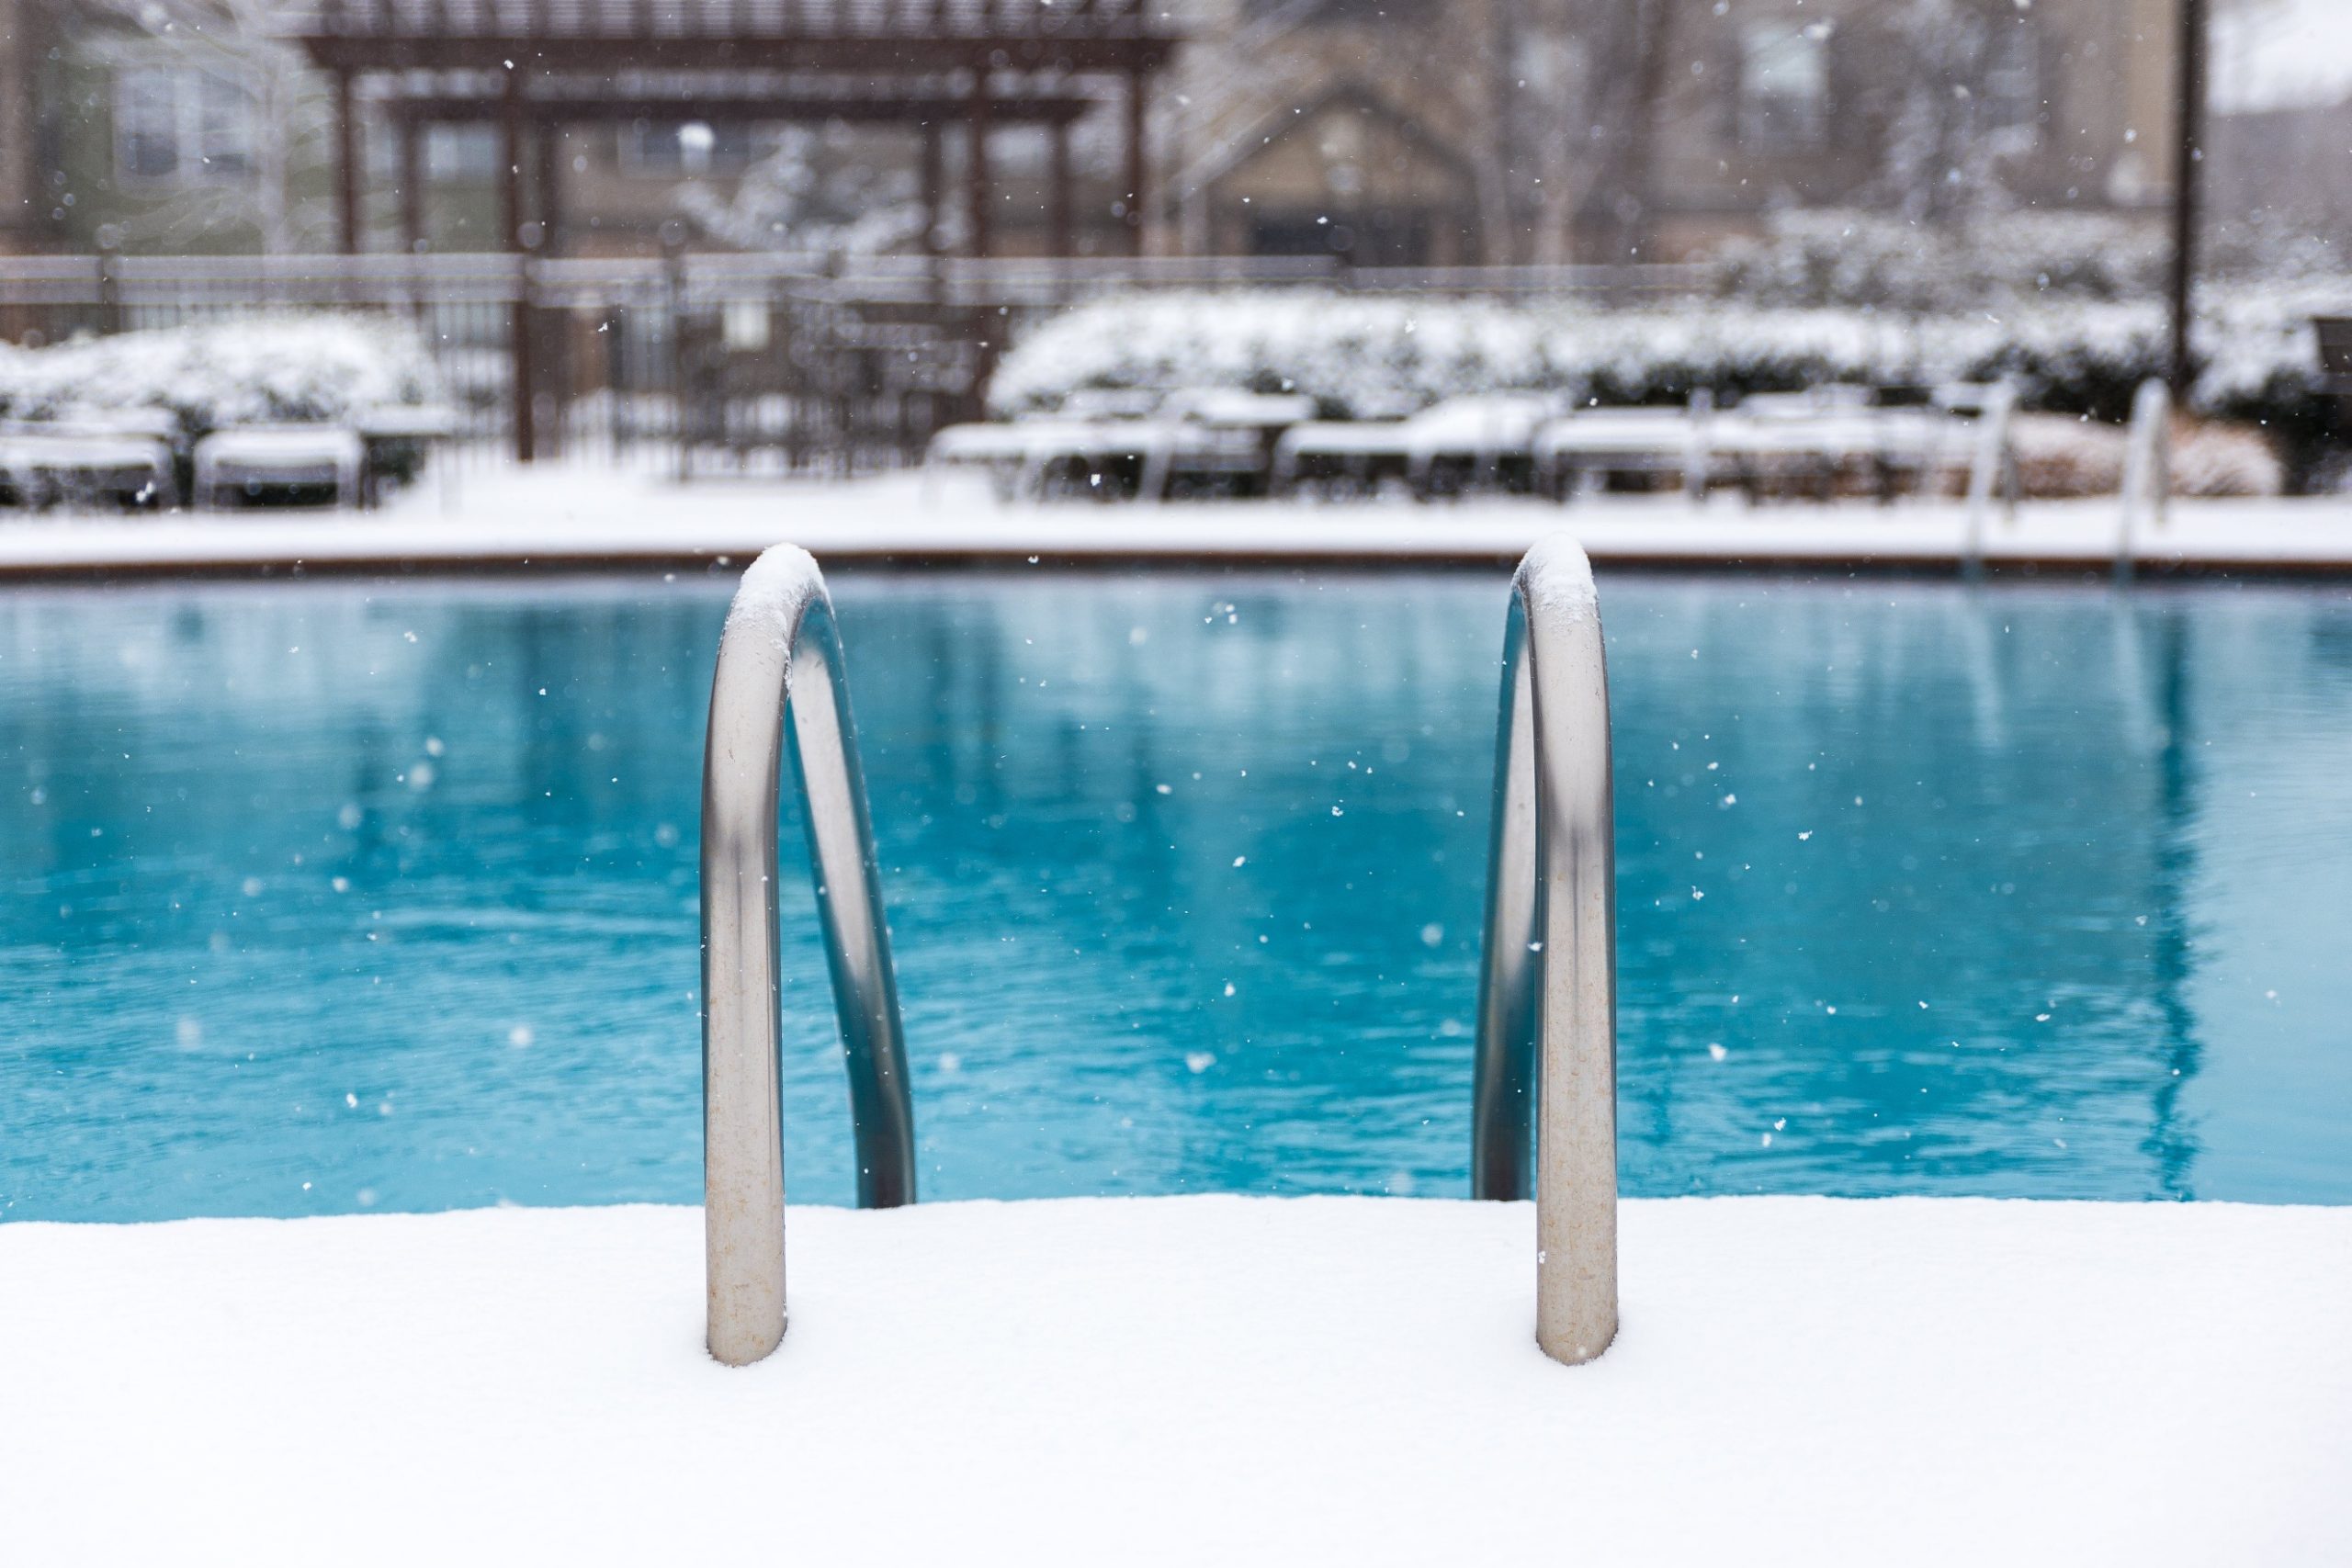 Entretien piscine hiver : les 5 points essentiels à connaître